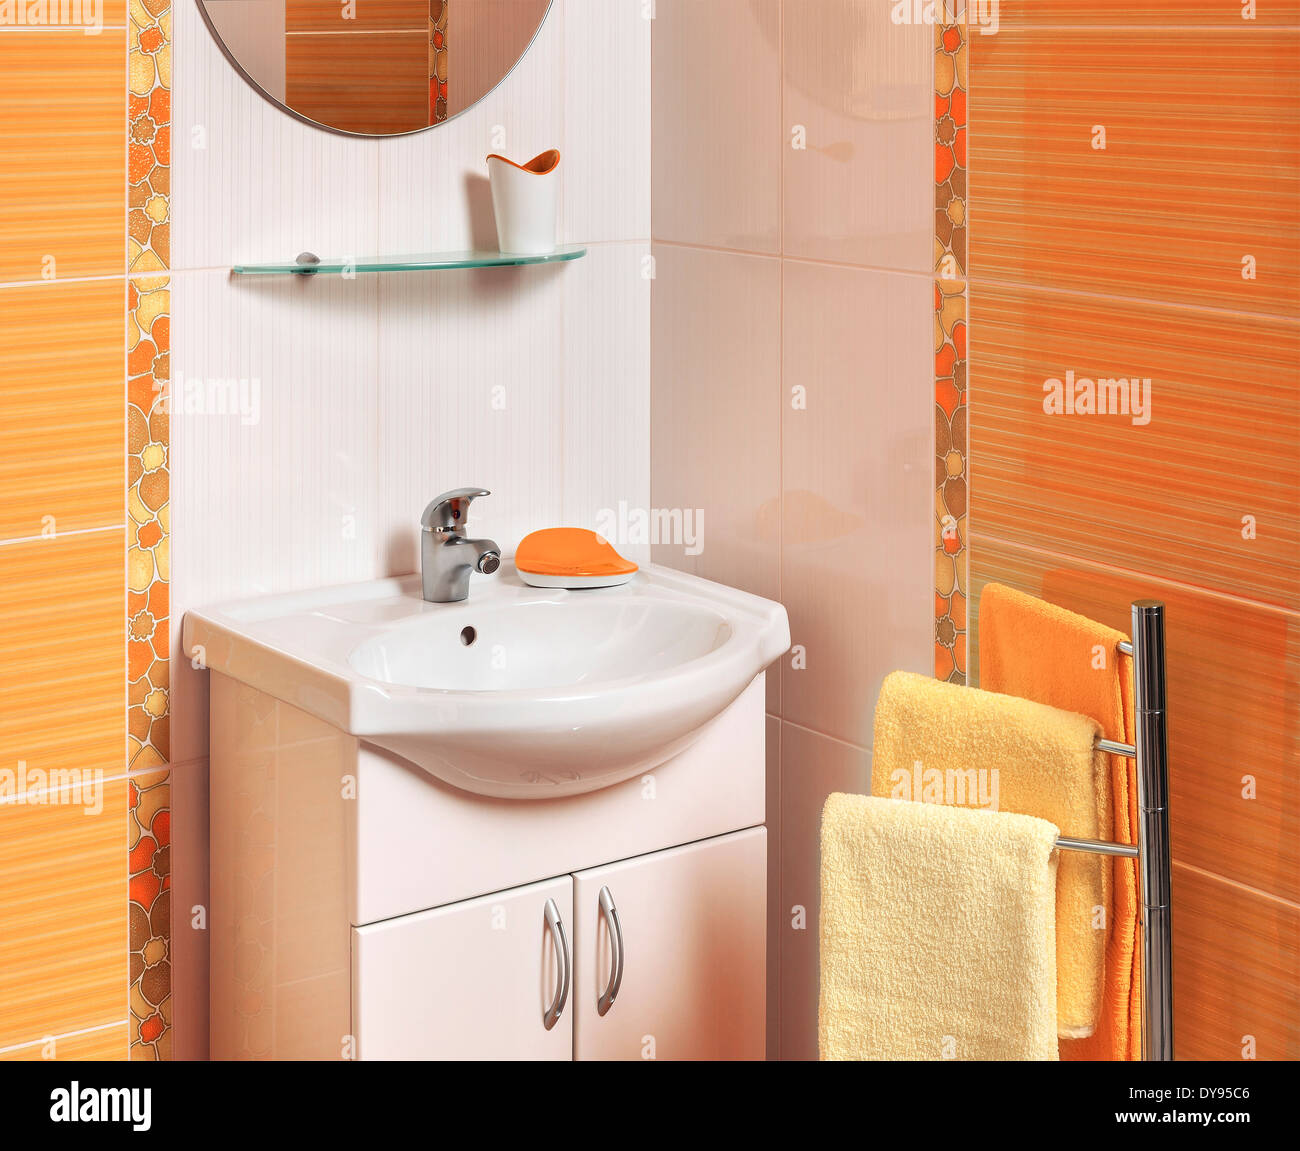 Detalle de un lujoso cuarto de baño con accesorios con baldosas blancas y naranja Foto de stock